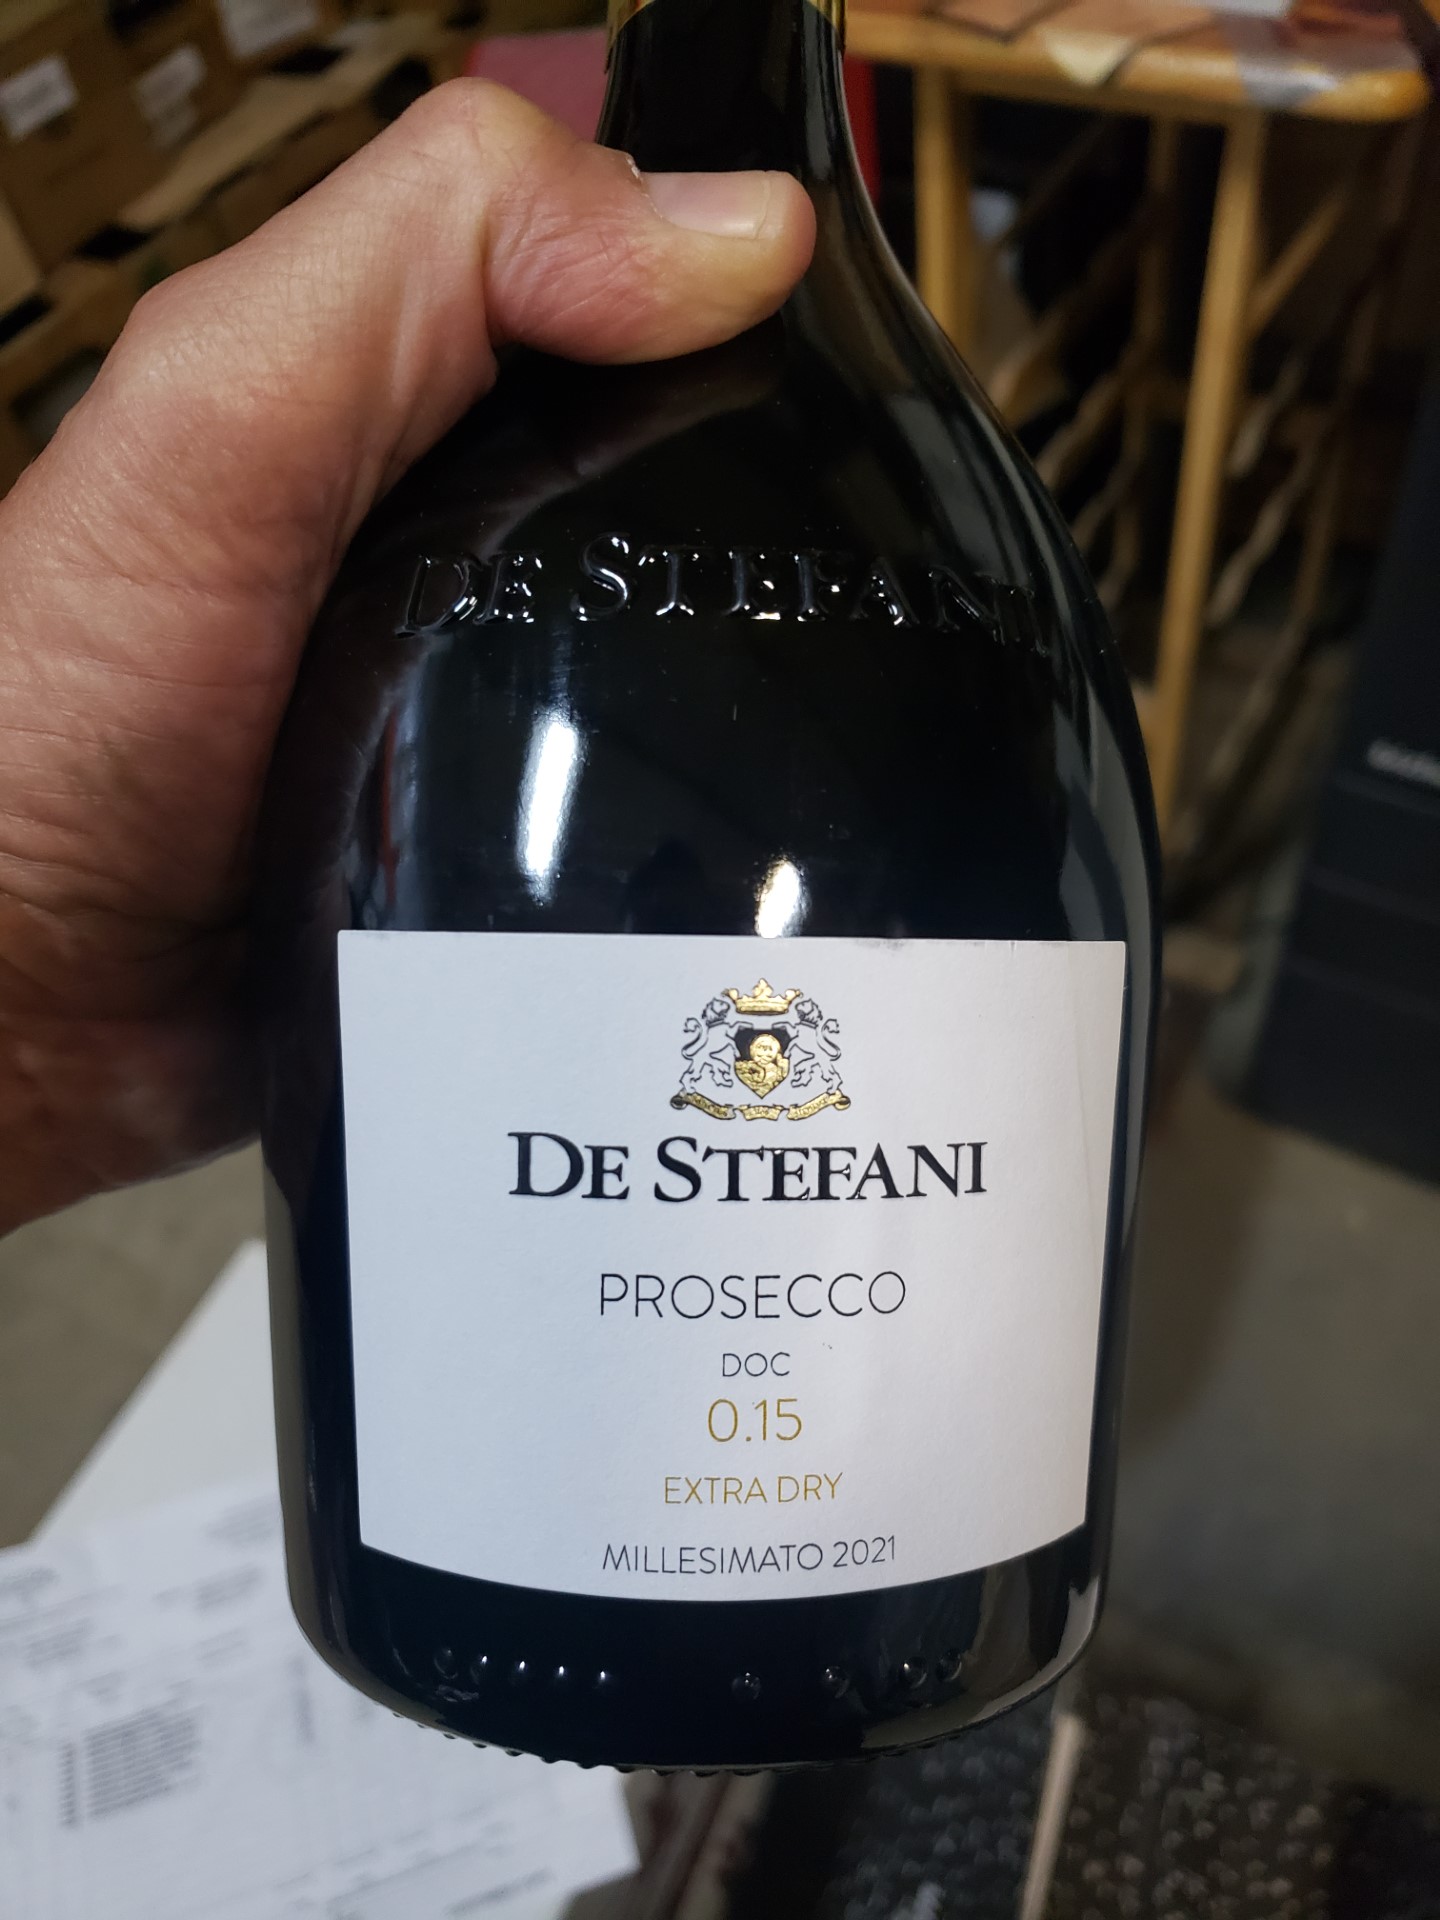 2021 De Stefani 0.15 Prosecco Extra Dry Millesimato Veneto, Italy - click image for full description